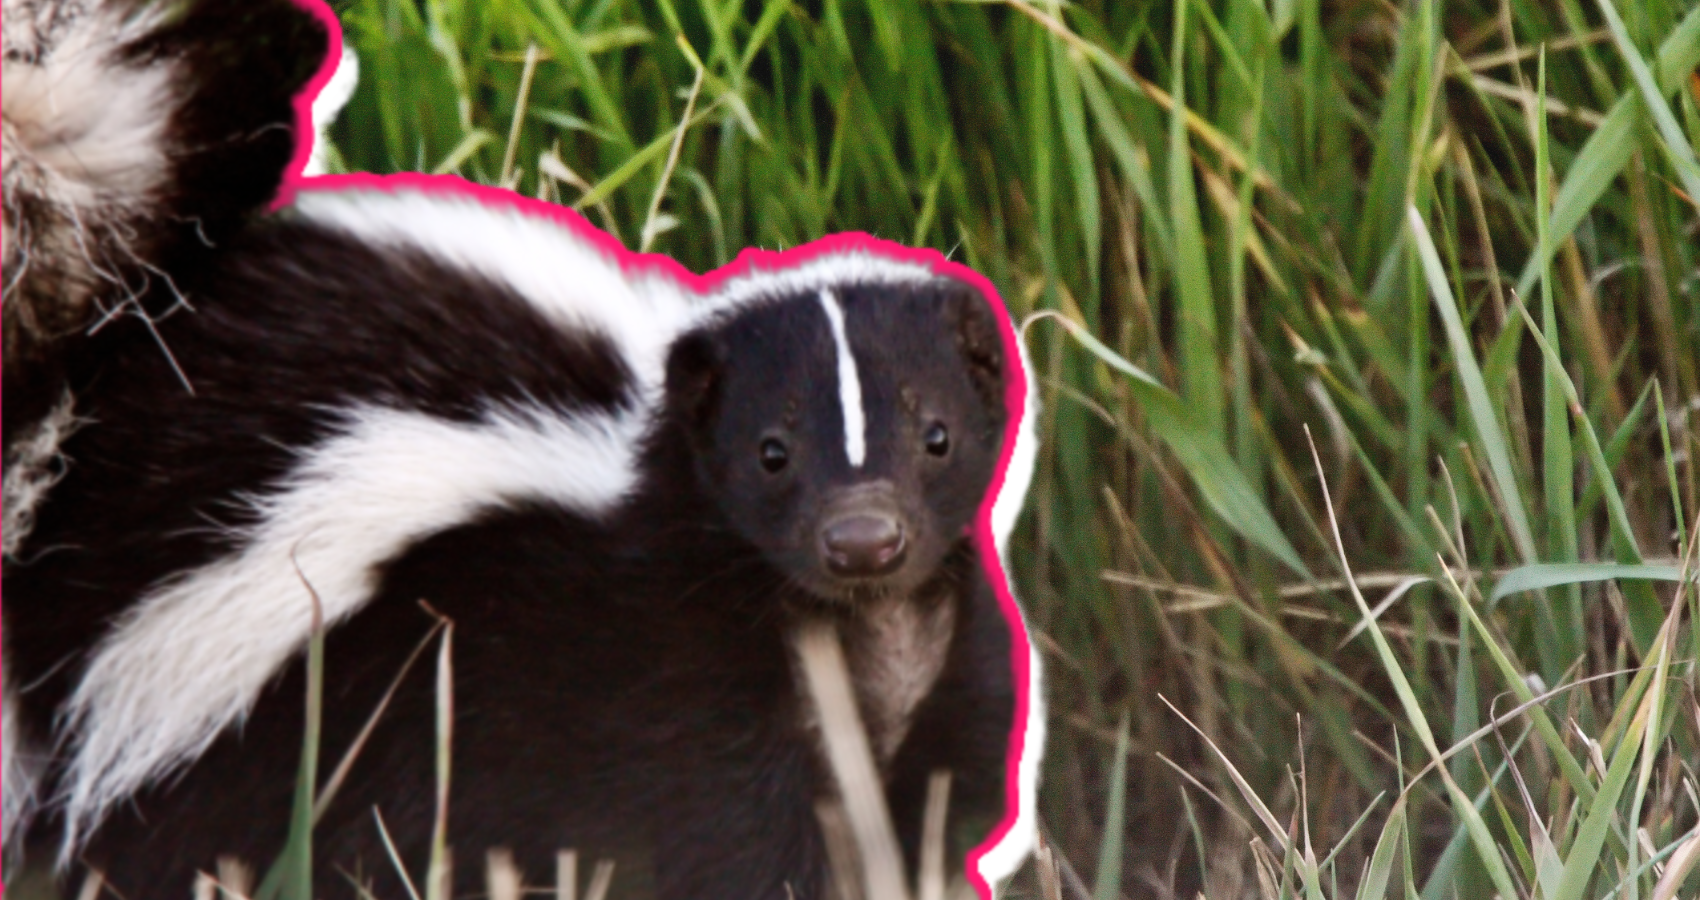 skunk as pet